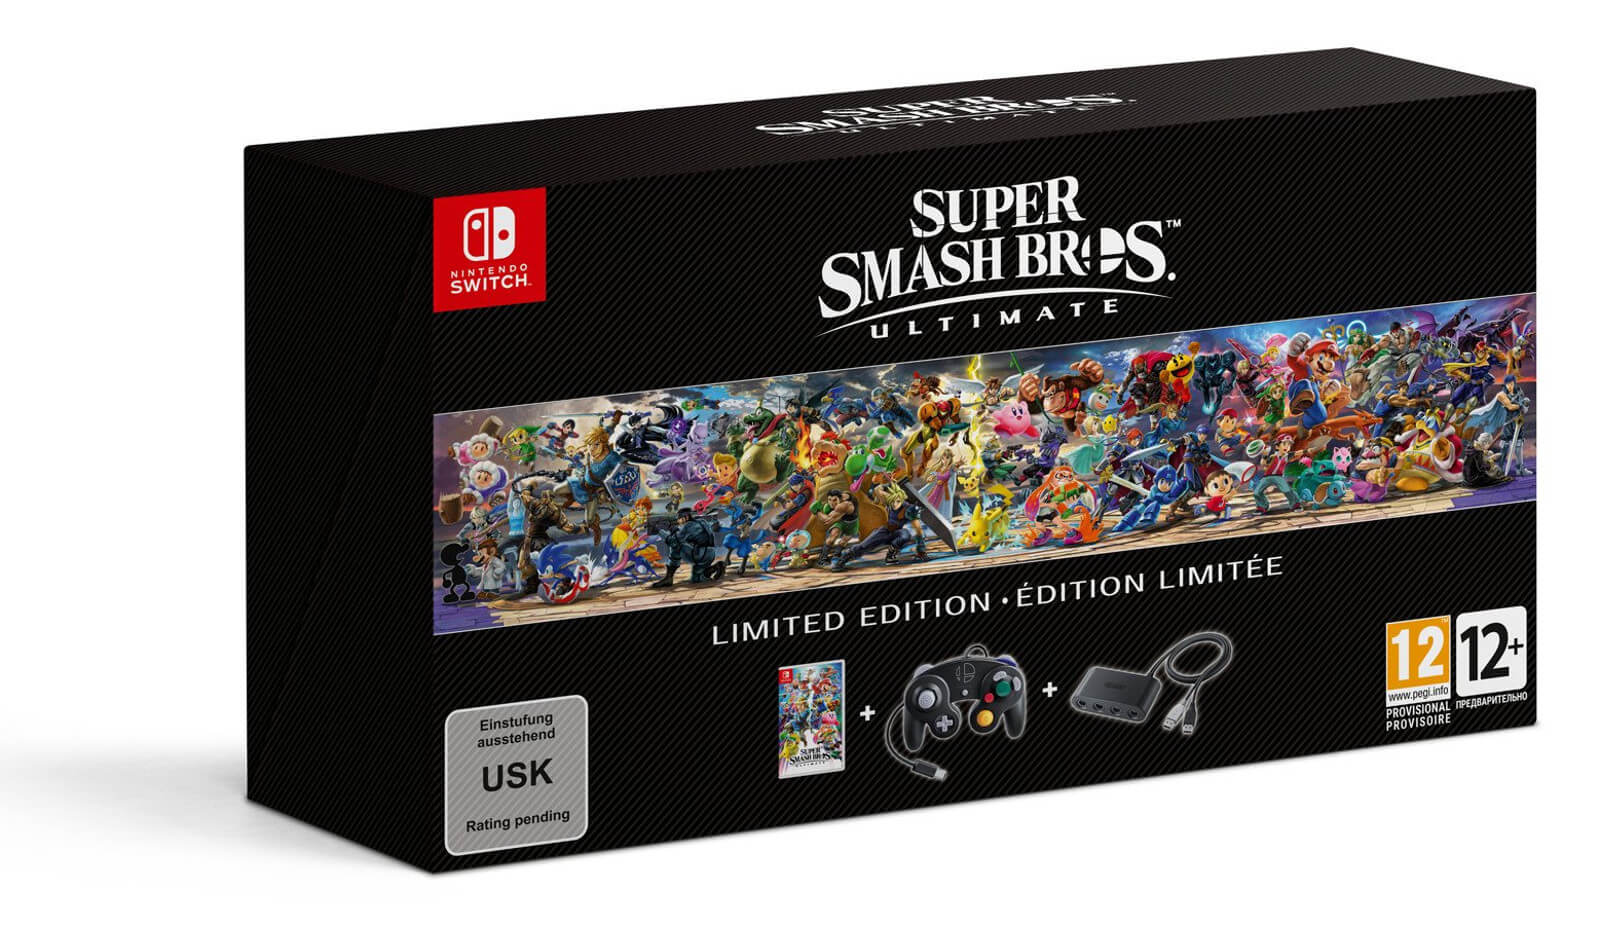 Caixa de Super Smash Bros. Ultimate - Limited Edition